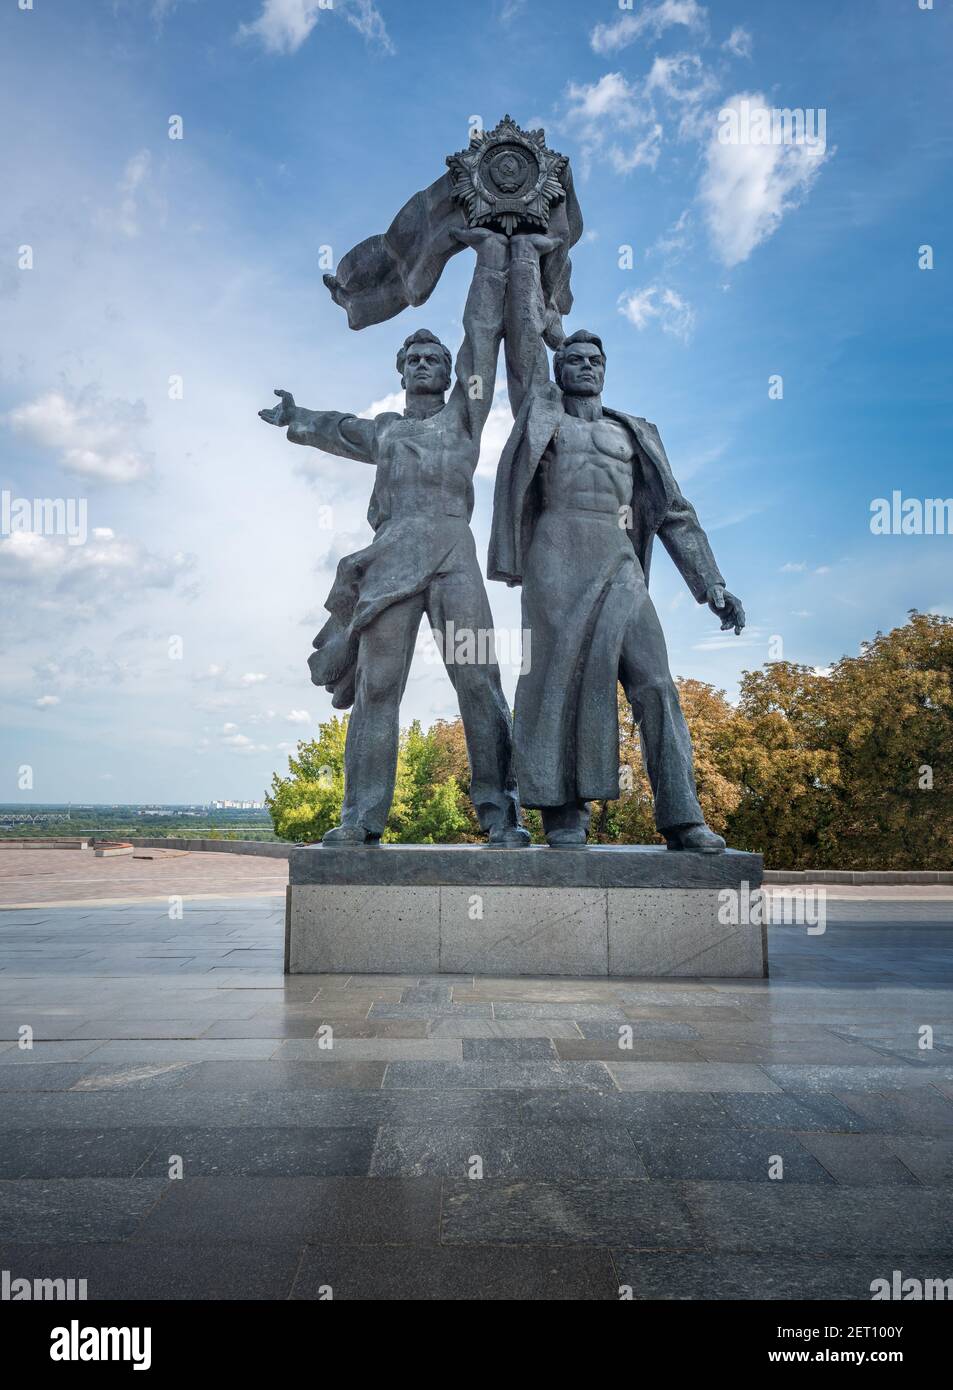 Travailleurs russes et soviétiques tenant le monument soviétique de l'ordre de l'amitié des peuples sous l'arche de l'amitié populaire - Kiev, Ukraine Banque D'Images